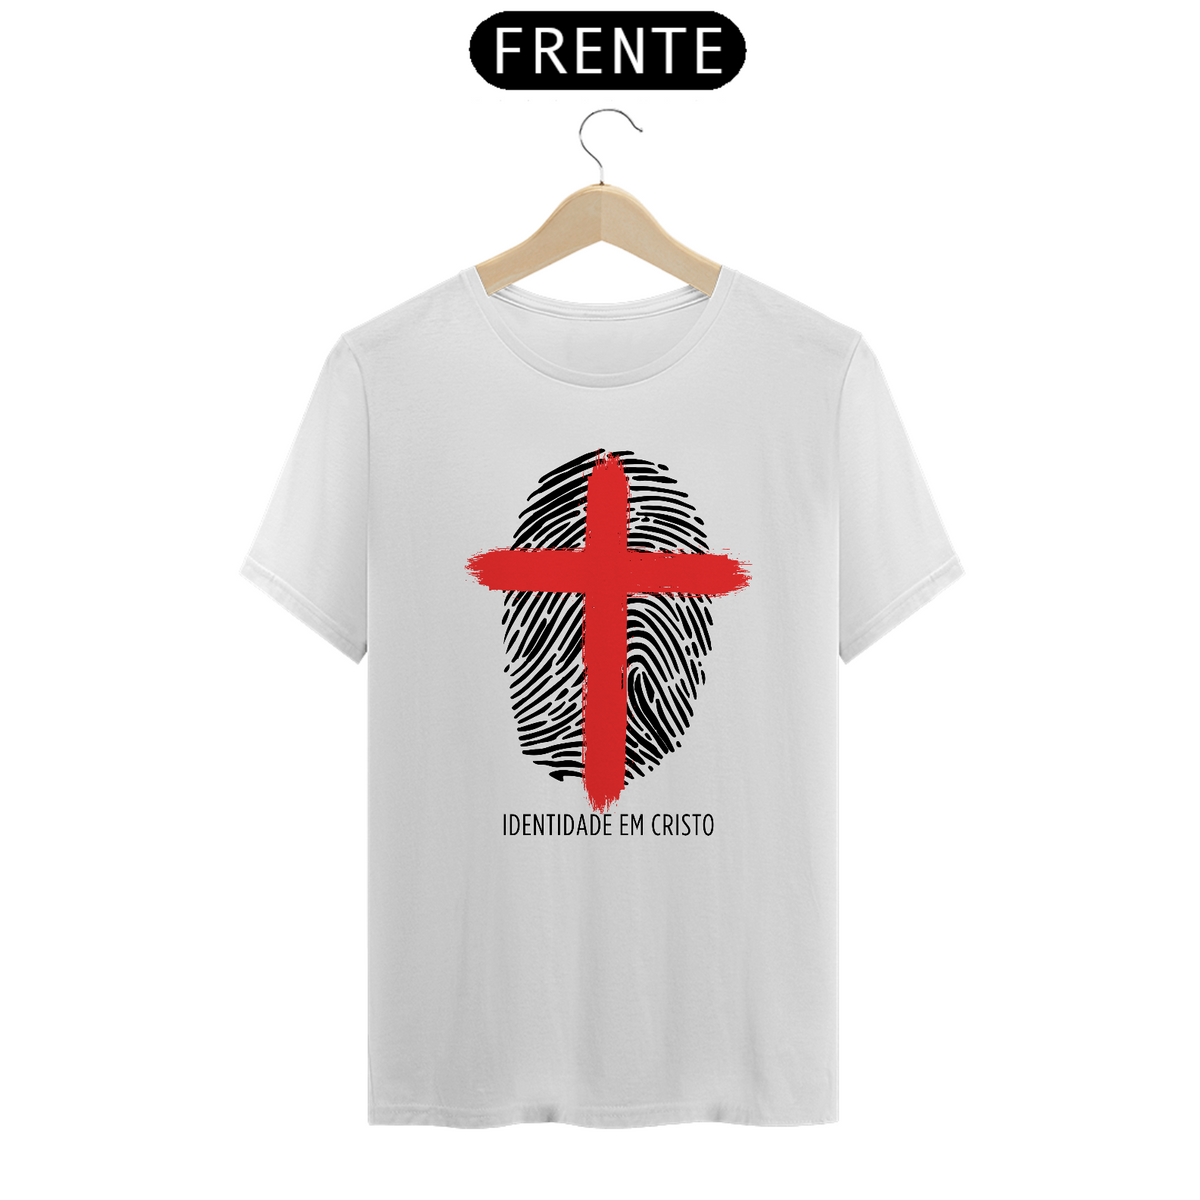 Nome do produto: Camiseta Identidade com Cristo